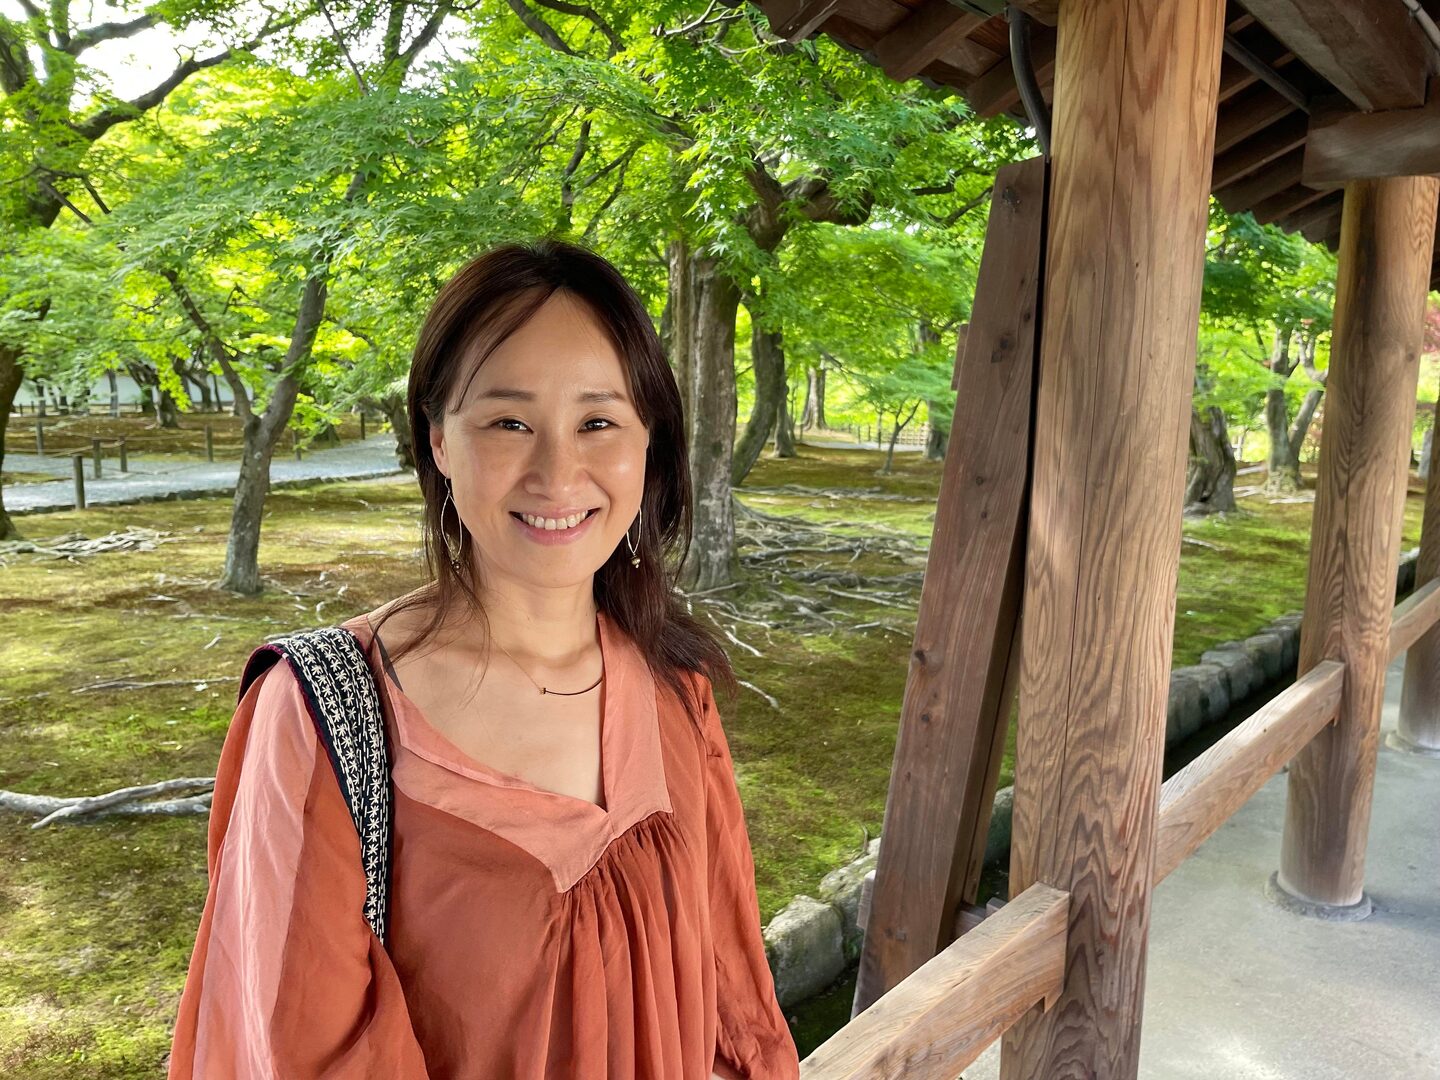 Tomomi Okubo outside smiling